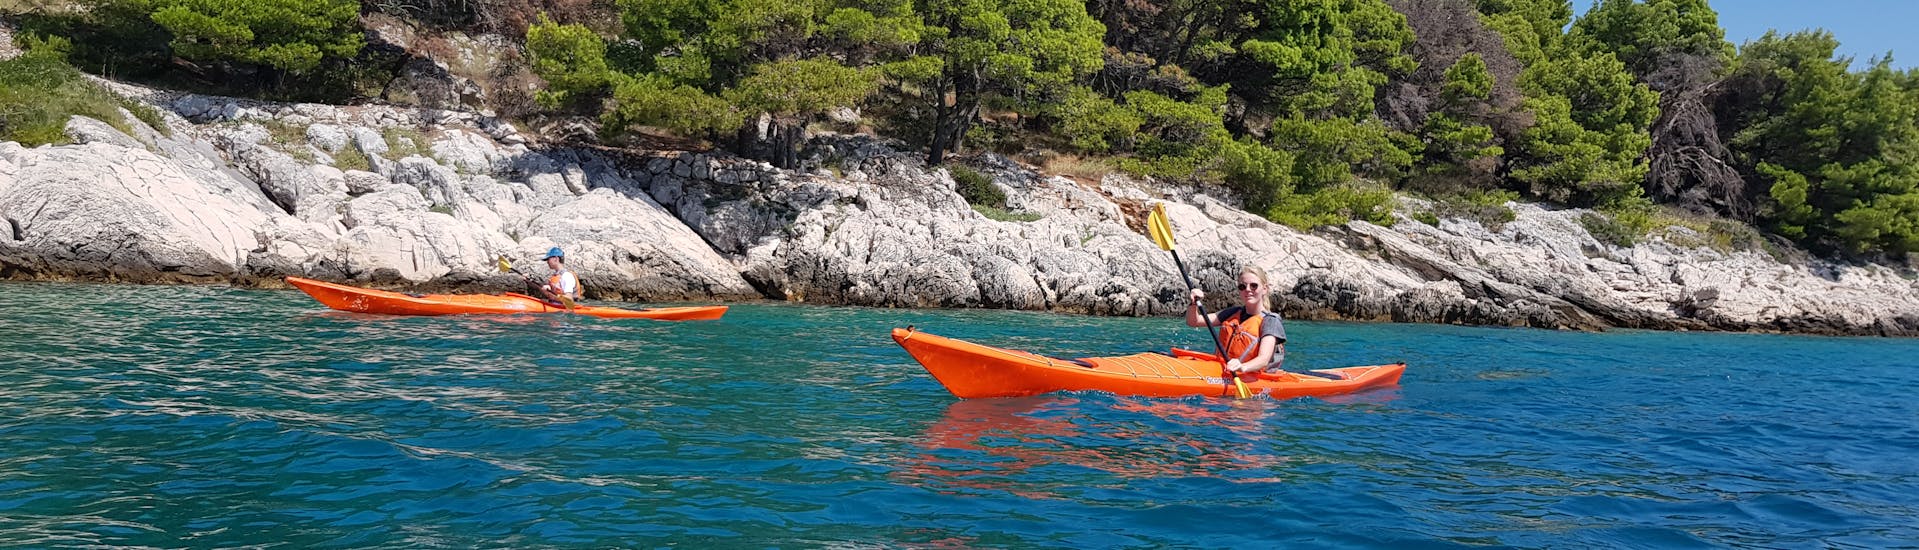 Zwei Teilnehmer in Kajaks auf dem Wasser, die die Private Kajaktour von Zlarin nach Prvić und Tijat - Halbtags genießen.